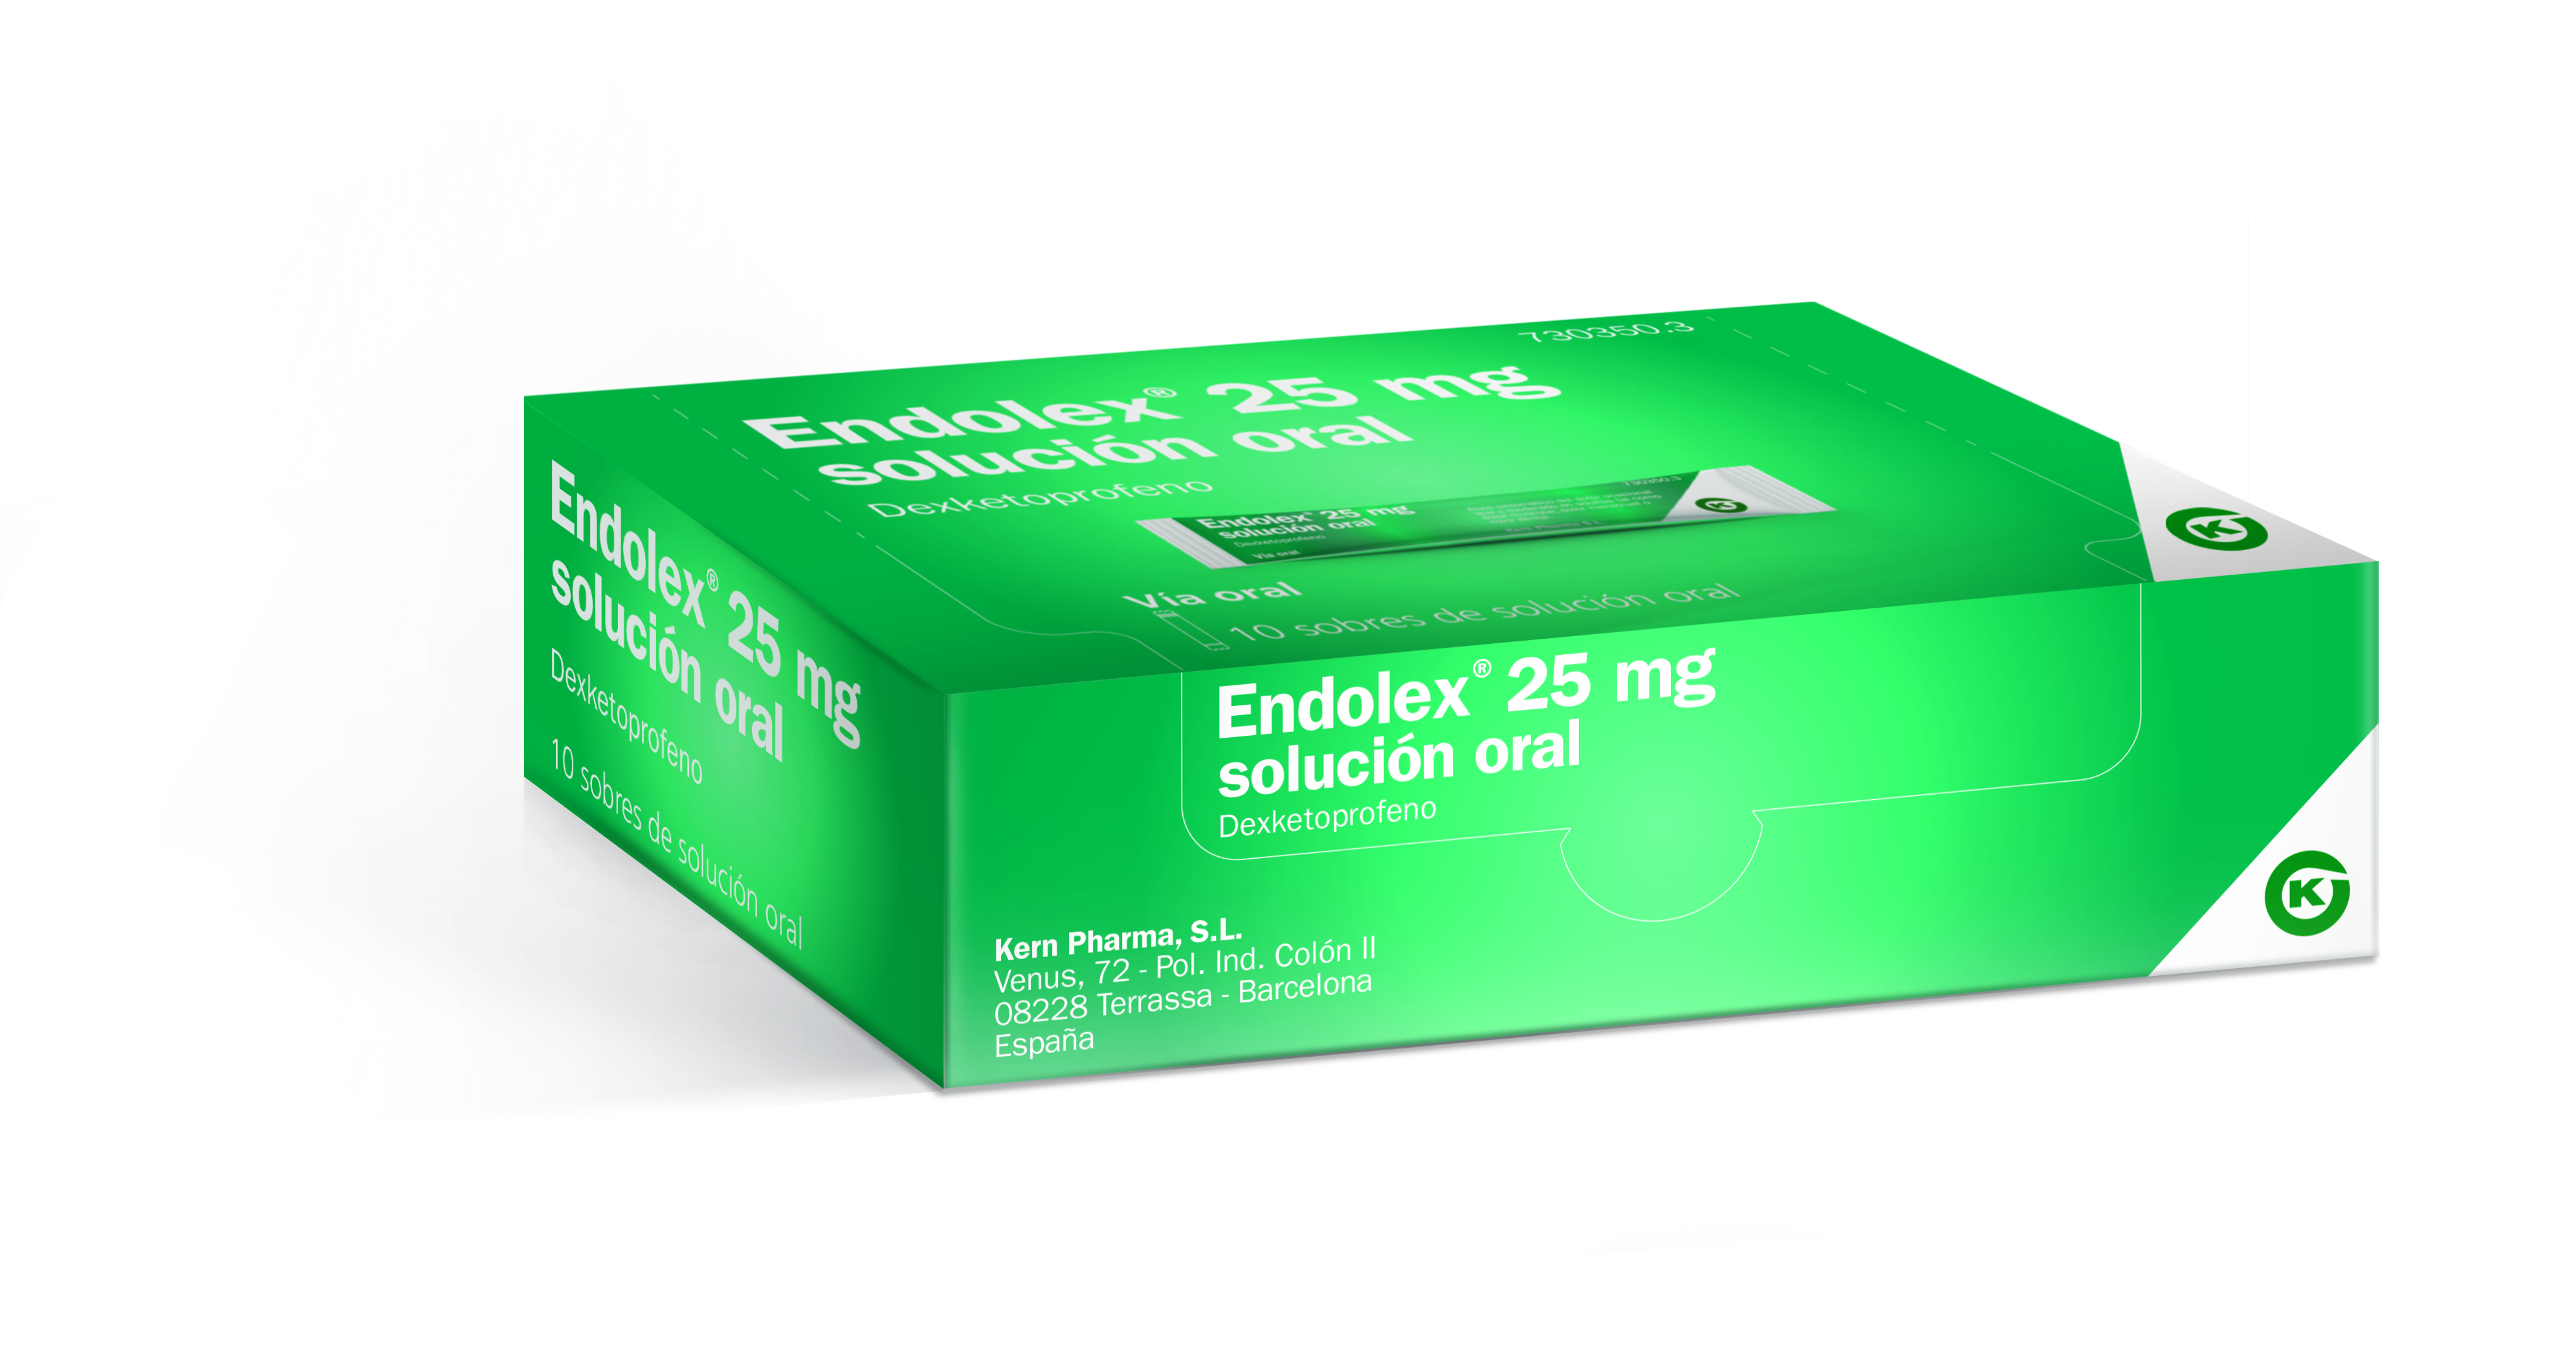 ENDOLEX 25 mg sobres solución oral, 10 sobres